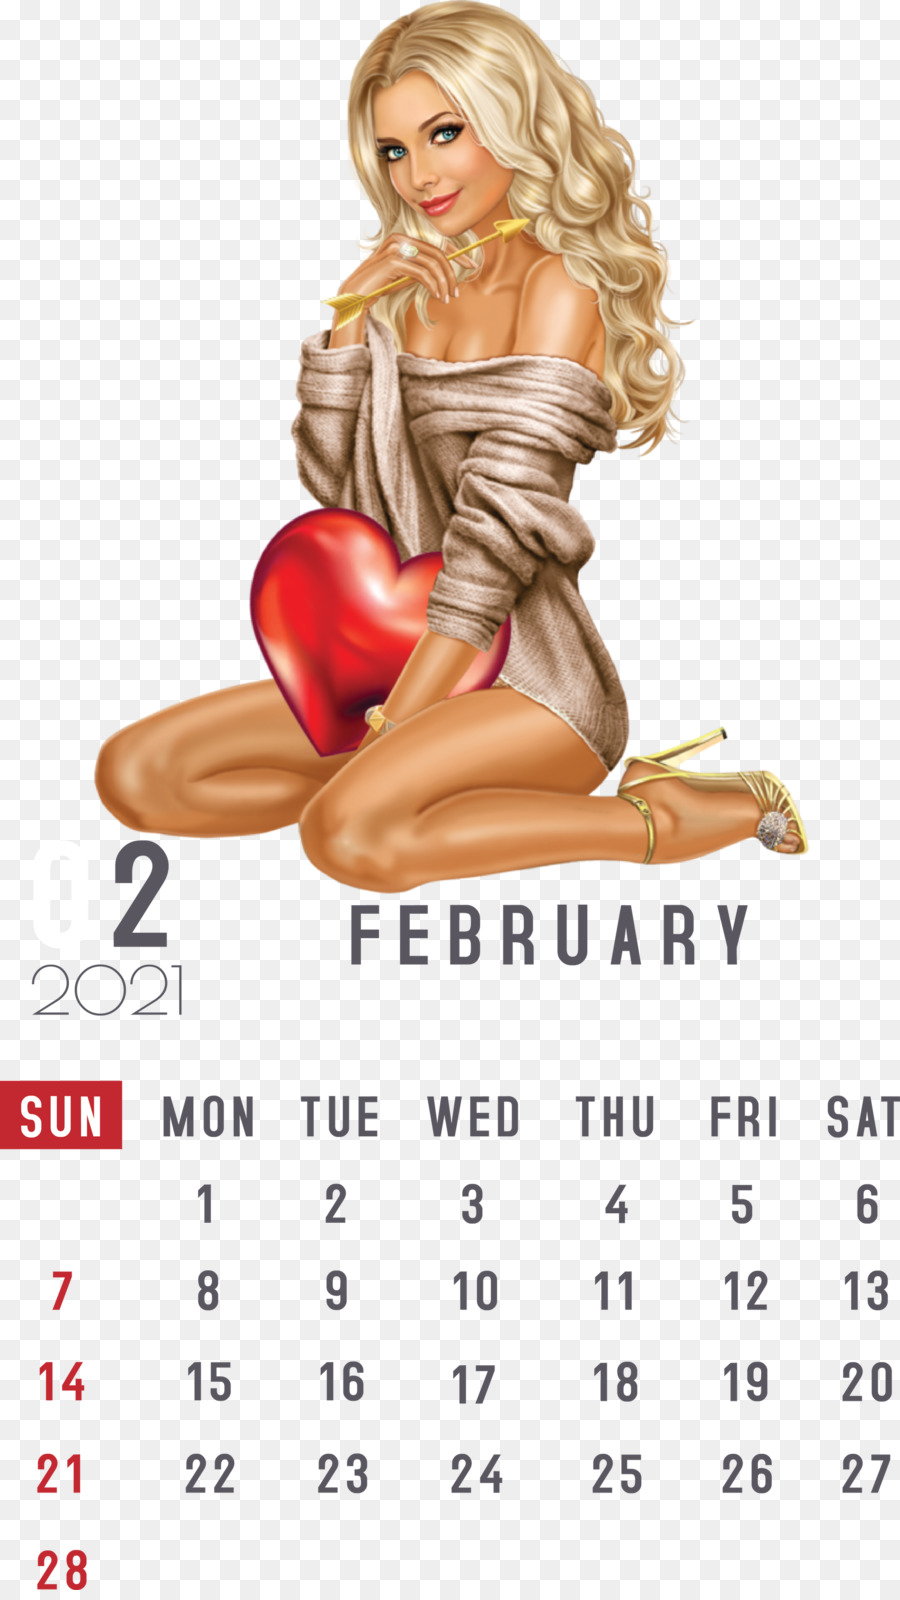 February 2021 Printable Calendar February Calendar 2021 Calendar